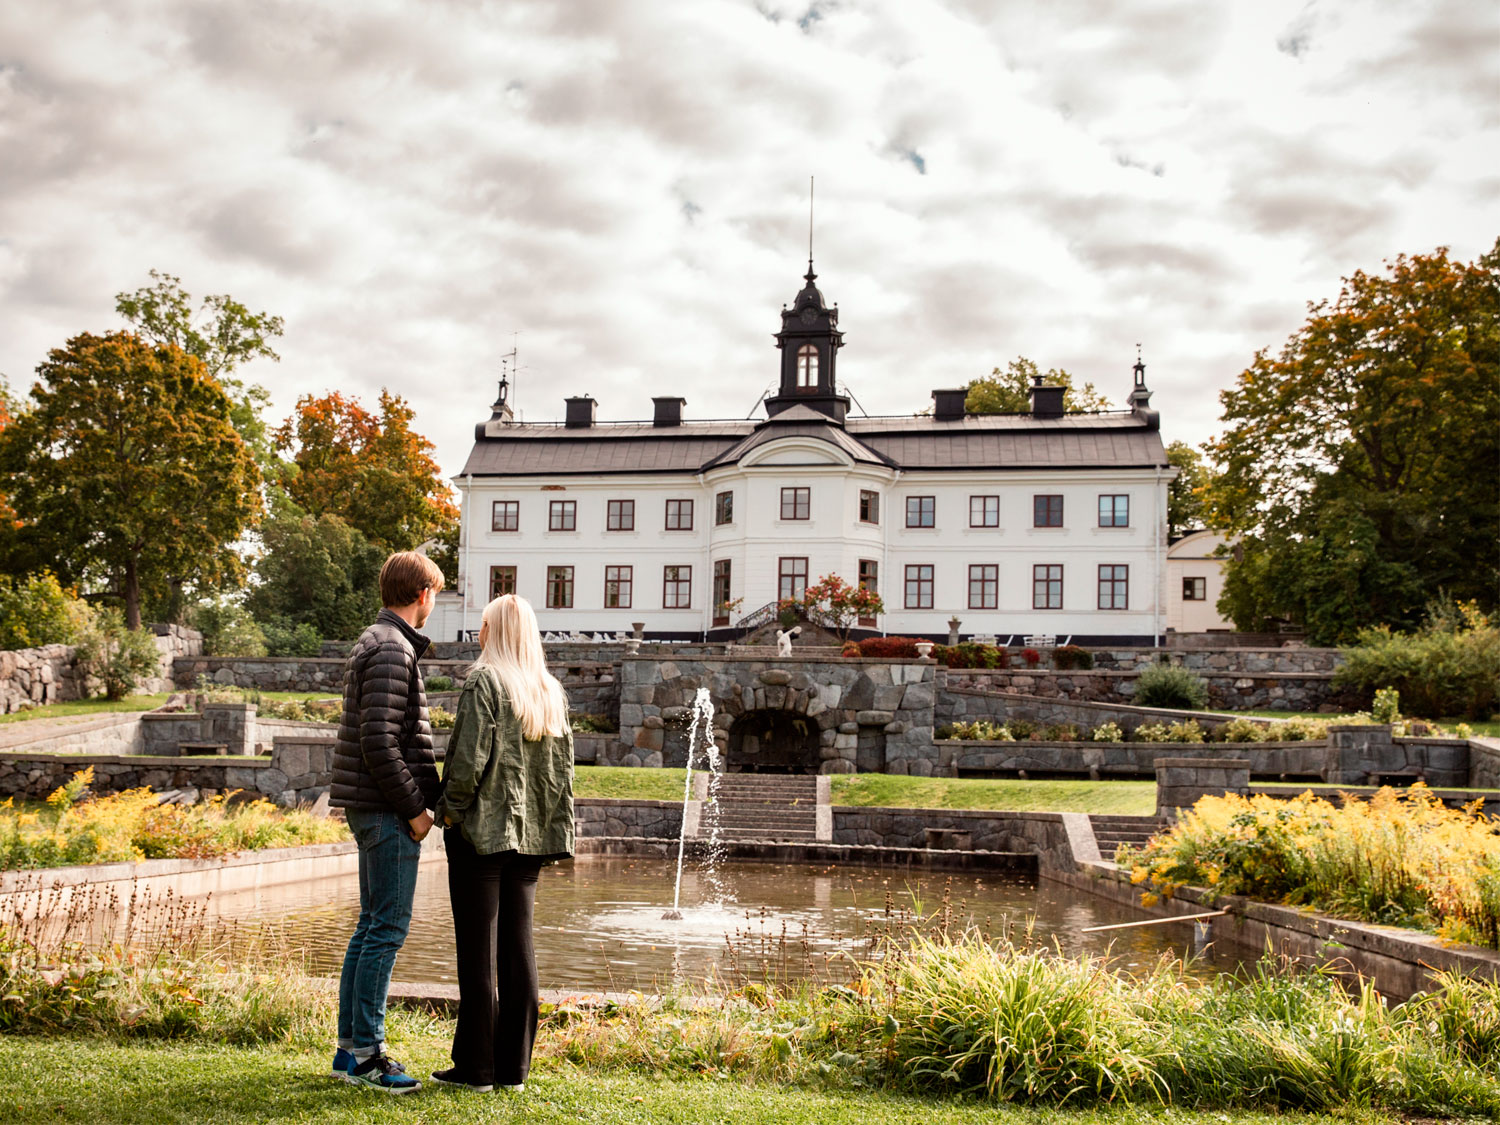 En kille och en tjej går i en slottspark. En gräsmatta syns och en fontän och statyer. I bakgrunden syns Kaggeholms slott som har en vit fasad. 